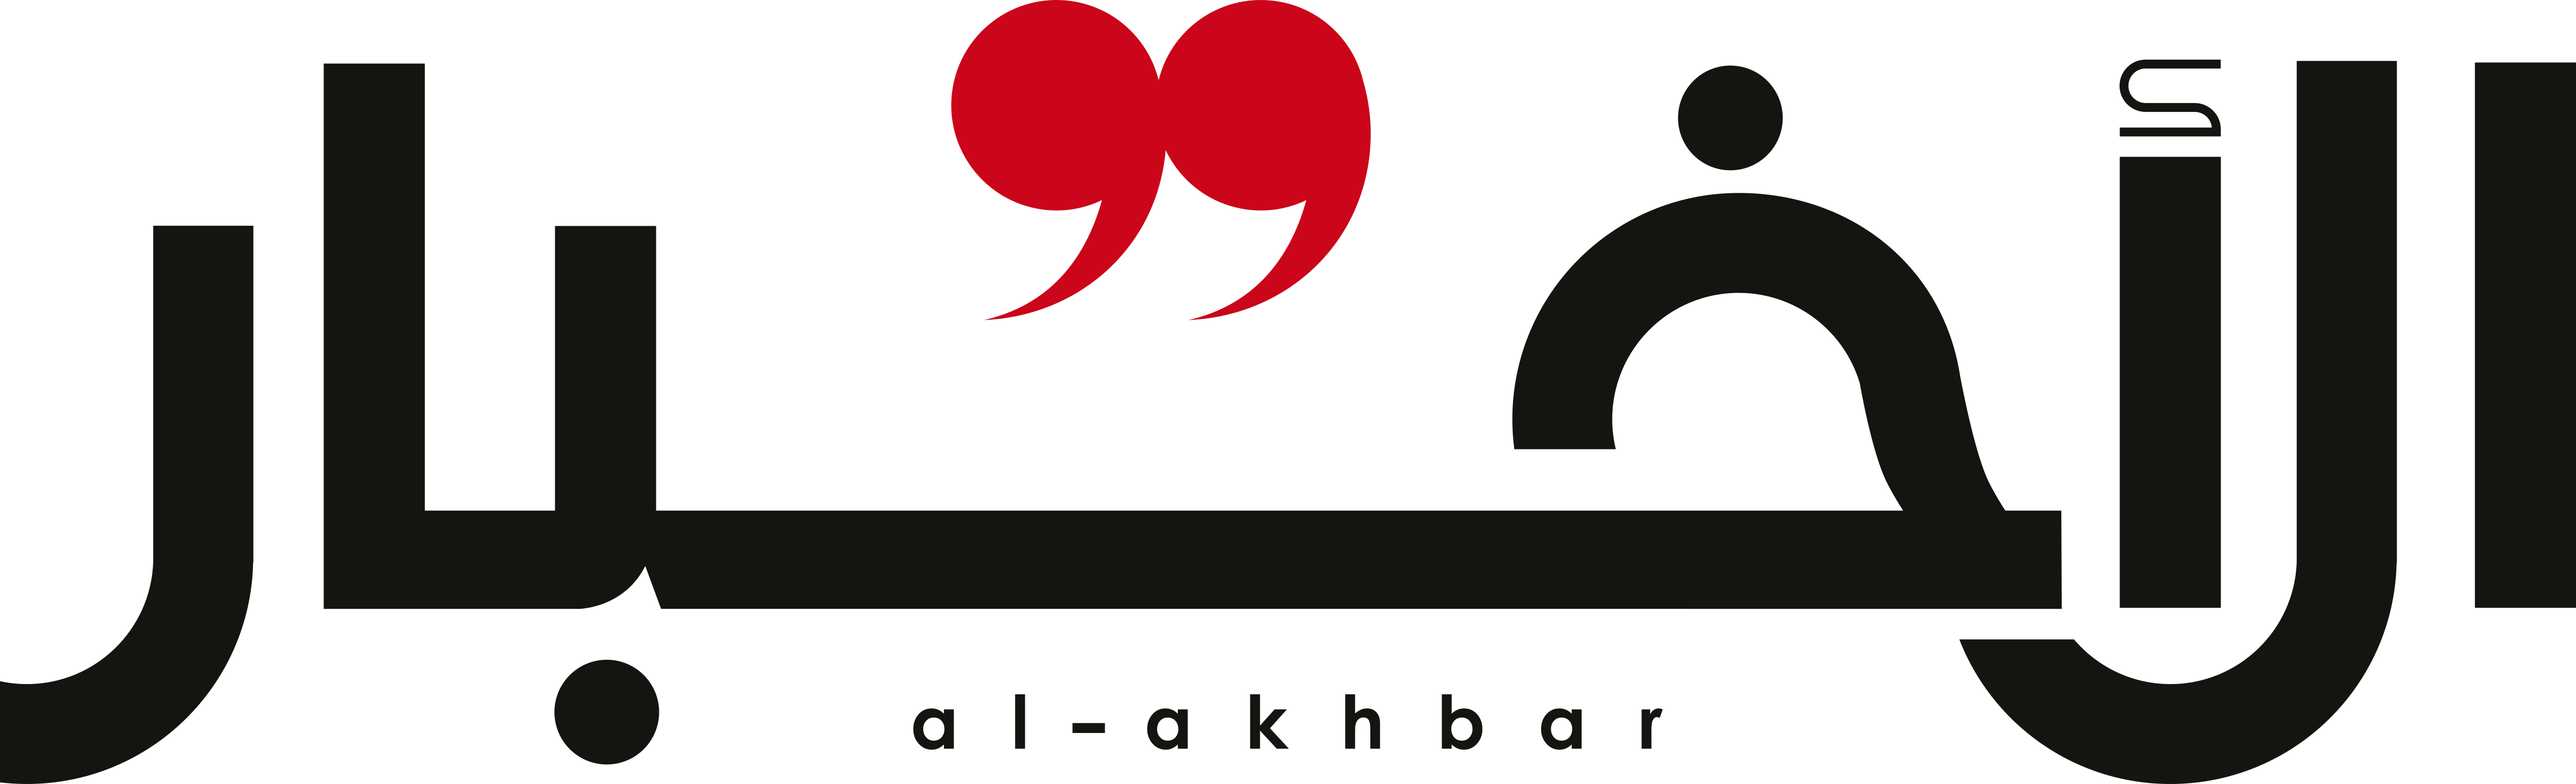 Al Akhbar – Logos Download